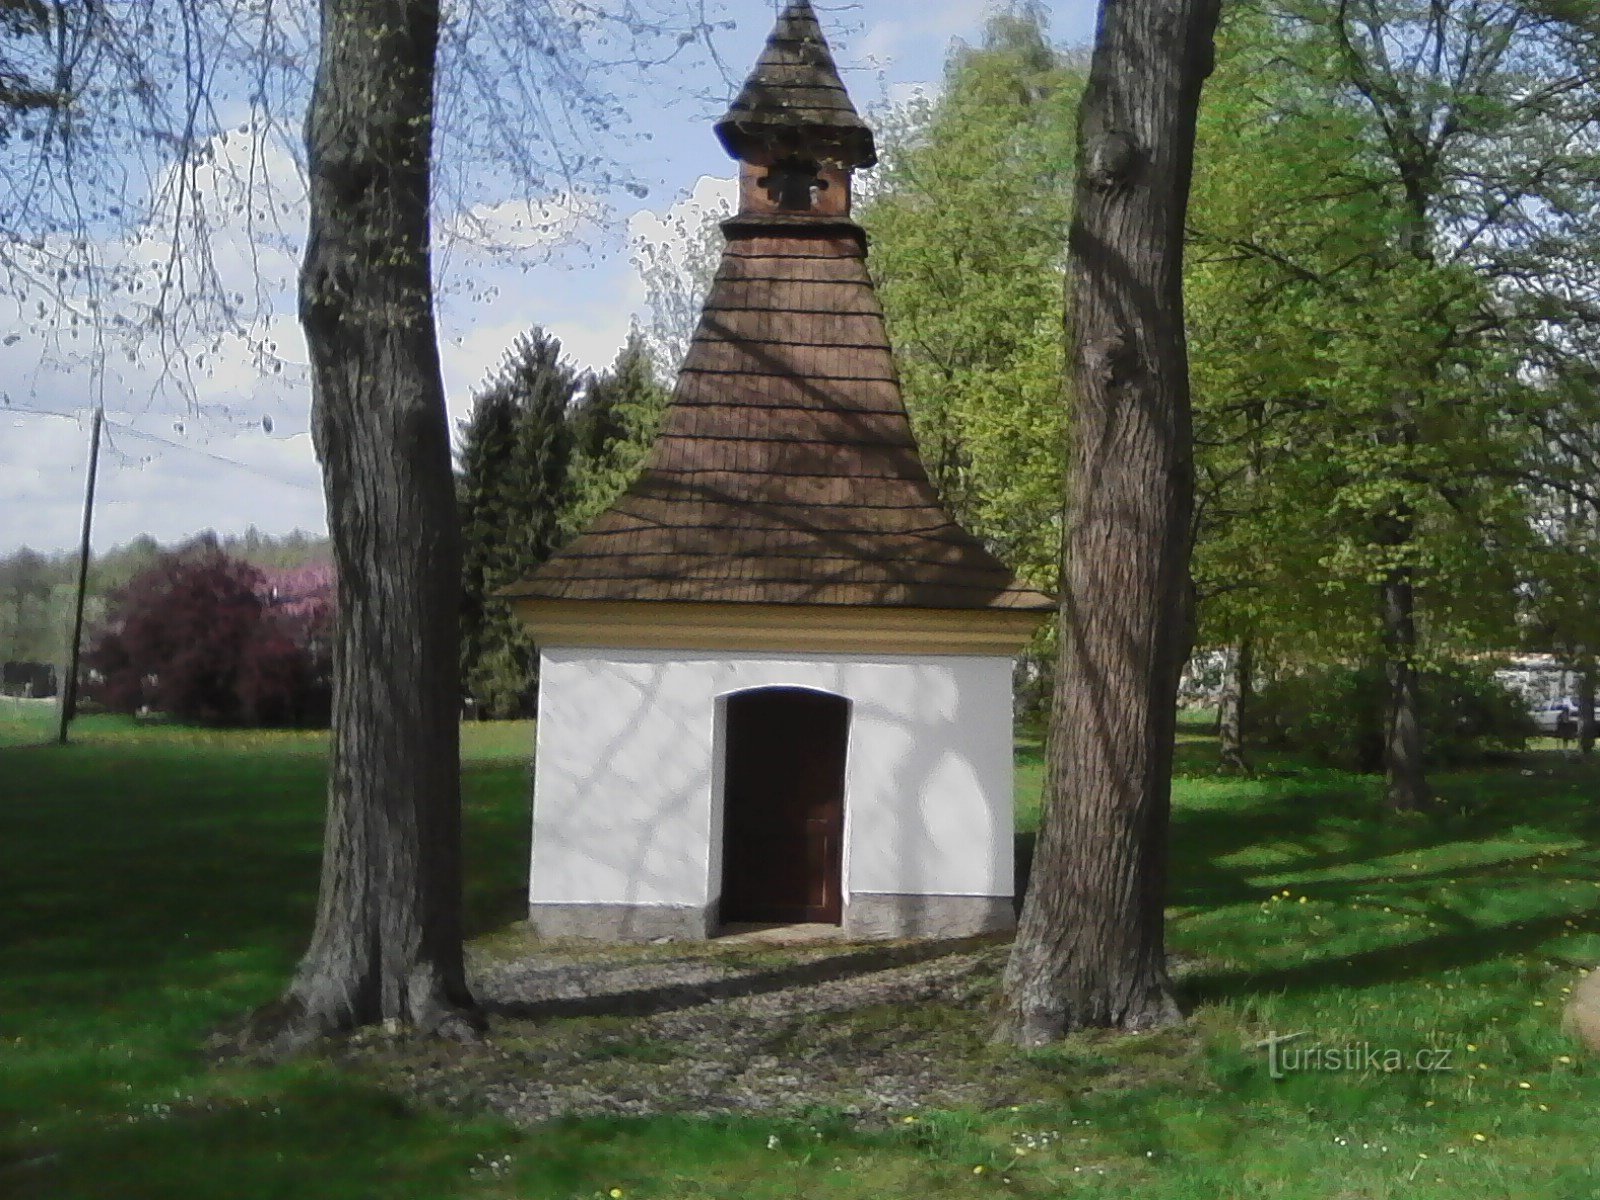 2. Красиво отремонтированная часовня св. Анны в Лесковицах. Первое письменное упоминание о существовании